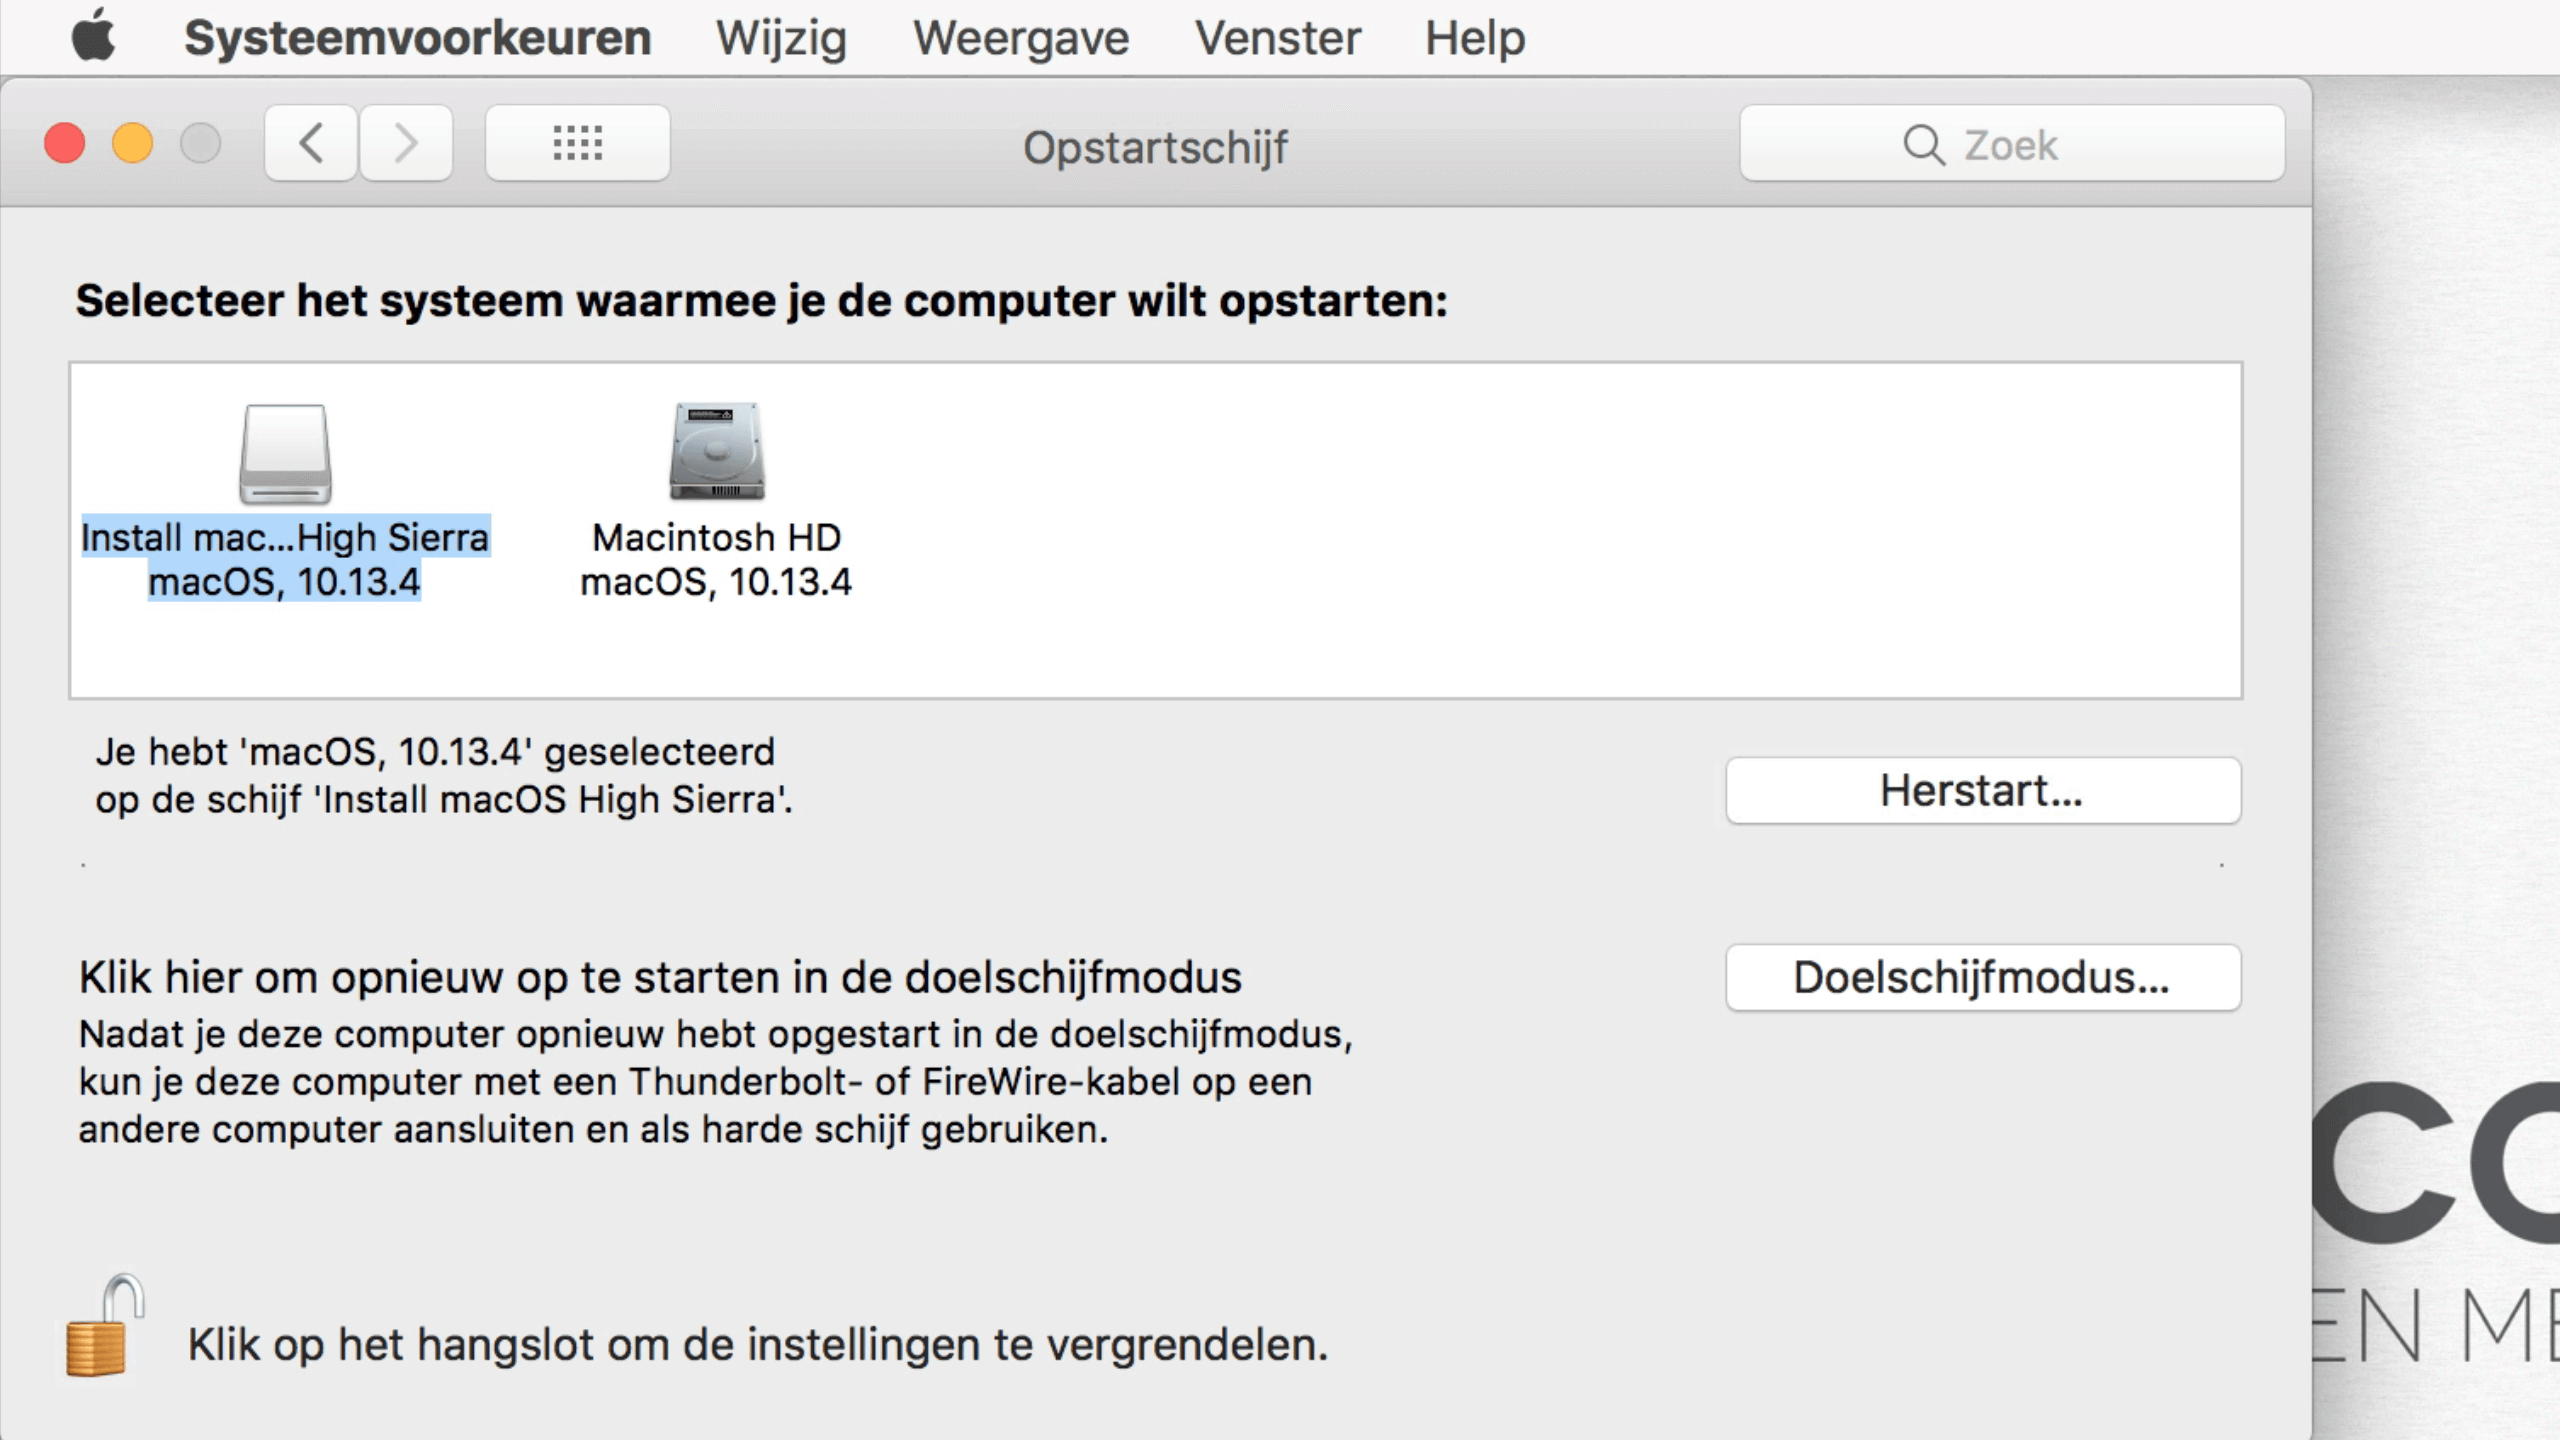 Je kunt de opstartschijf selecteren in de Systeemvoorkeuren van macOS